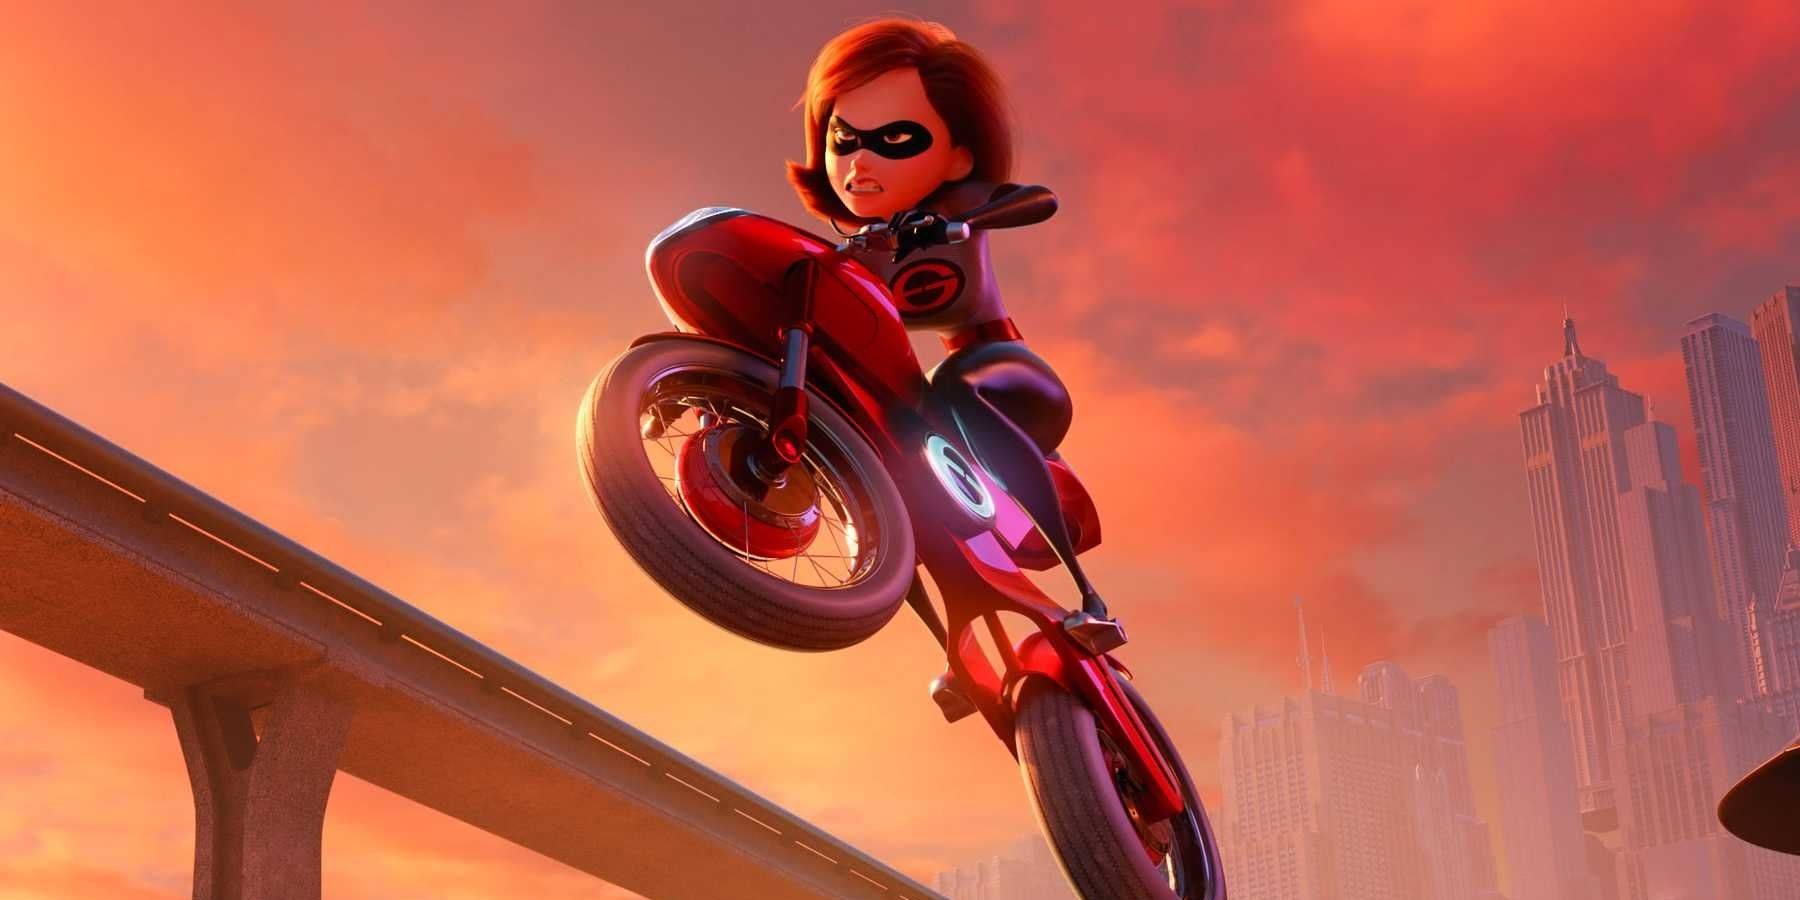 Elastigirl's motorcycle in Incredibles 2